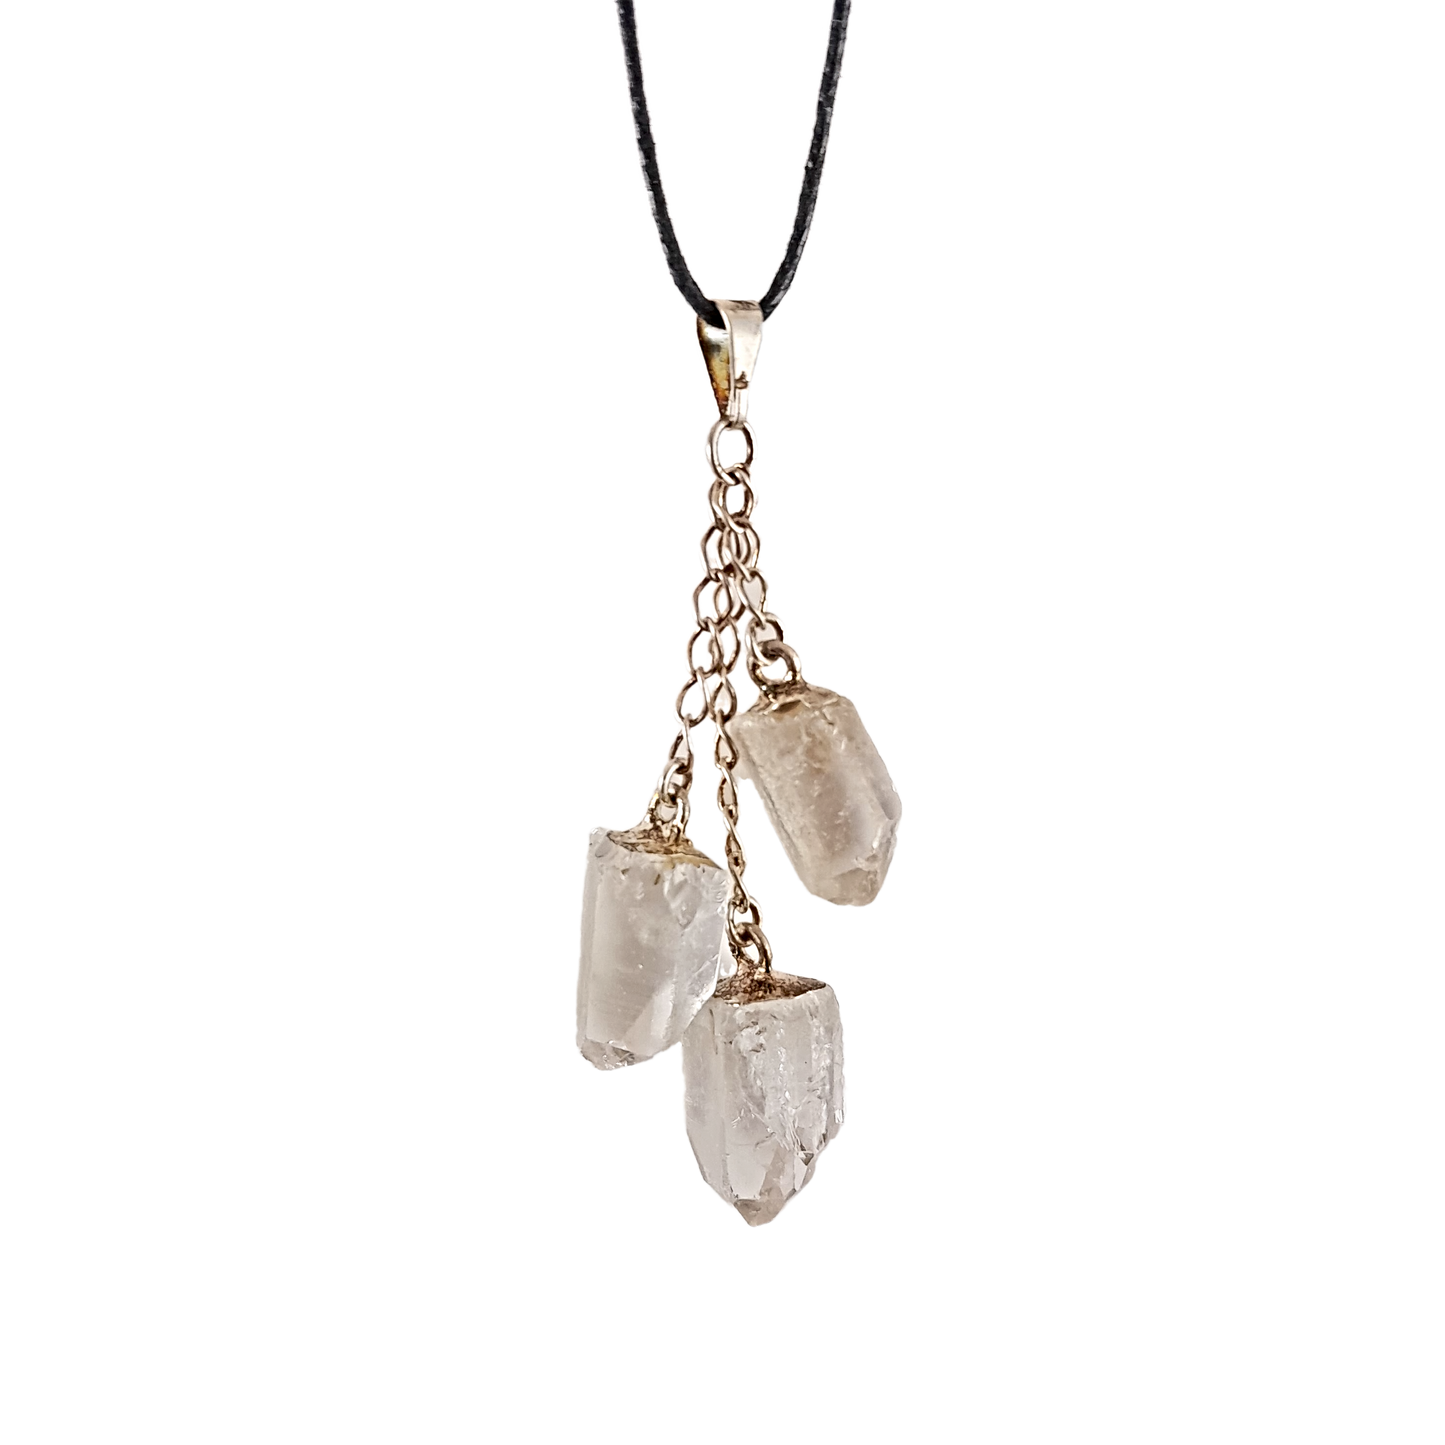 3-dangle clear quartz necklace